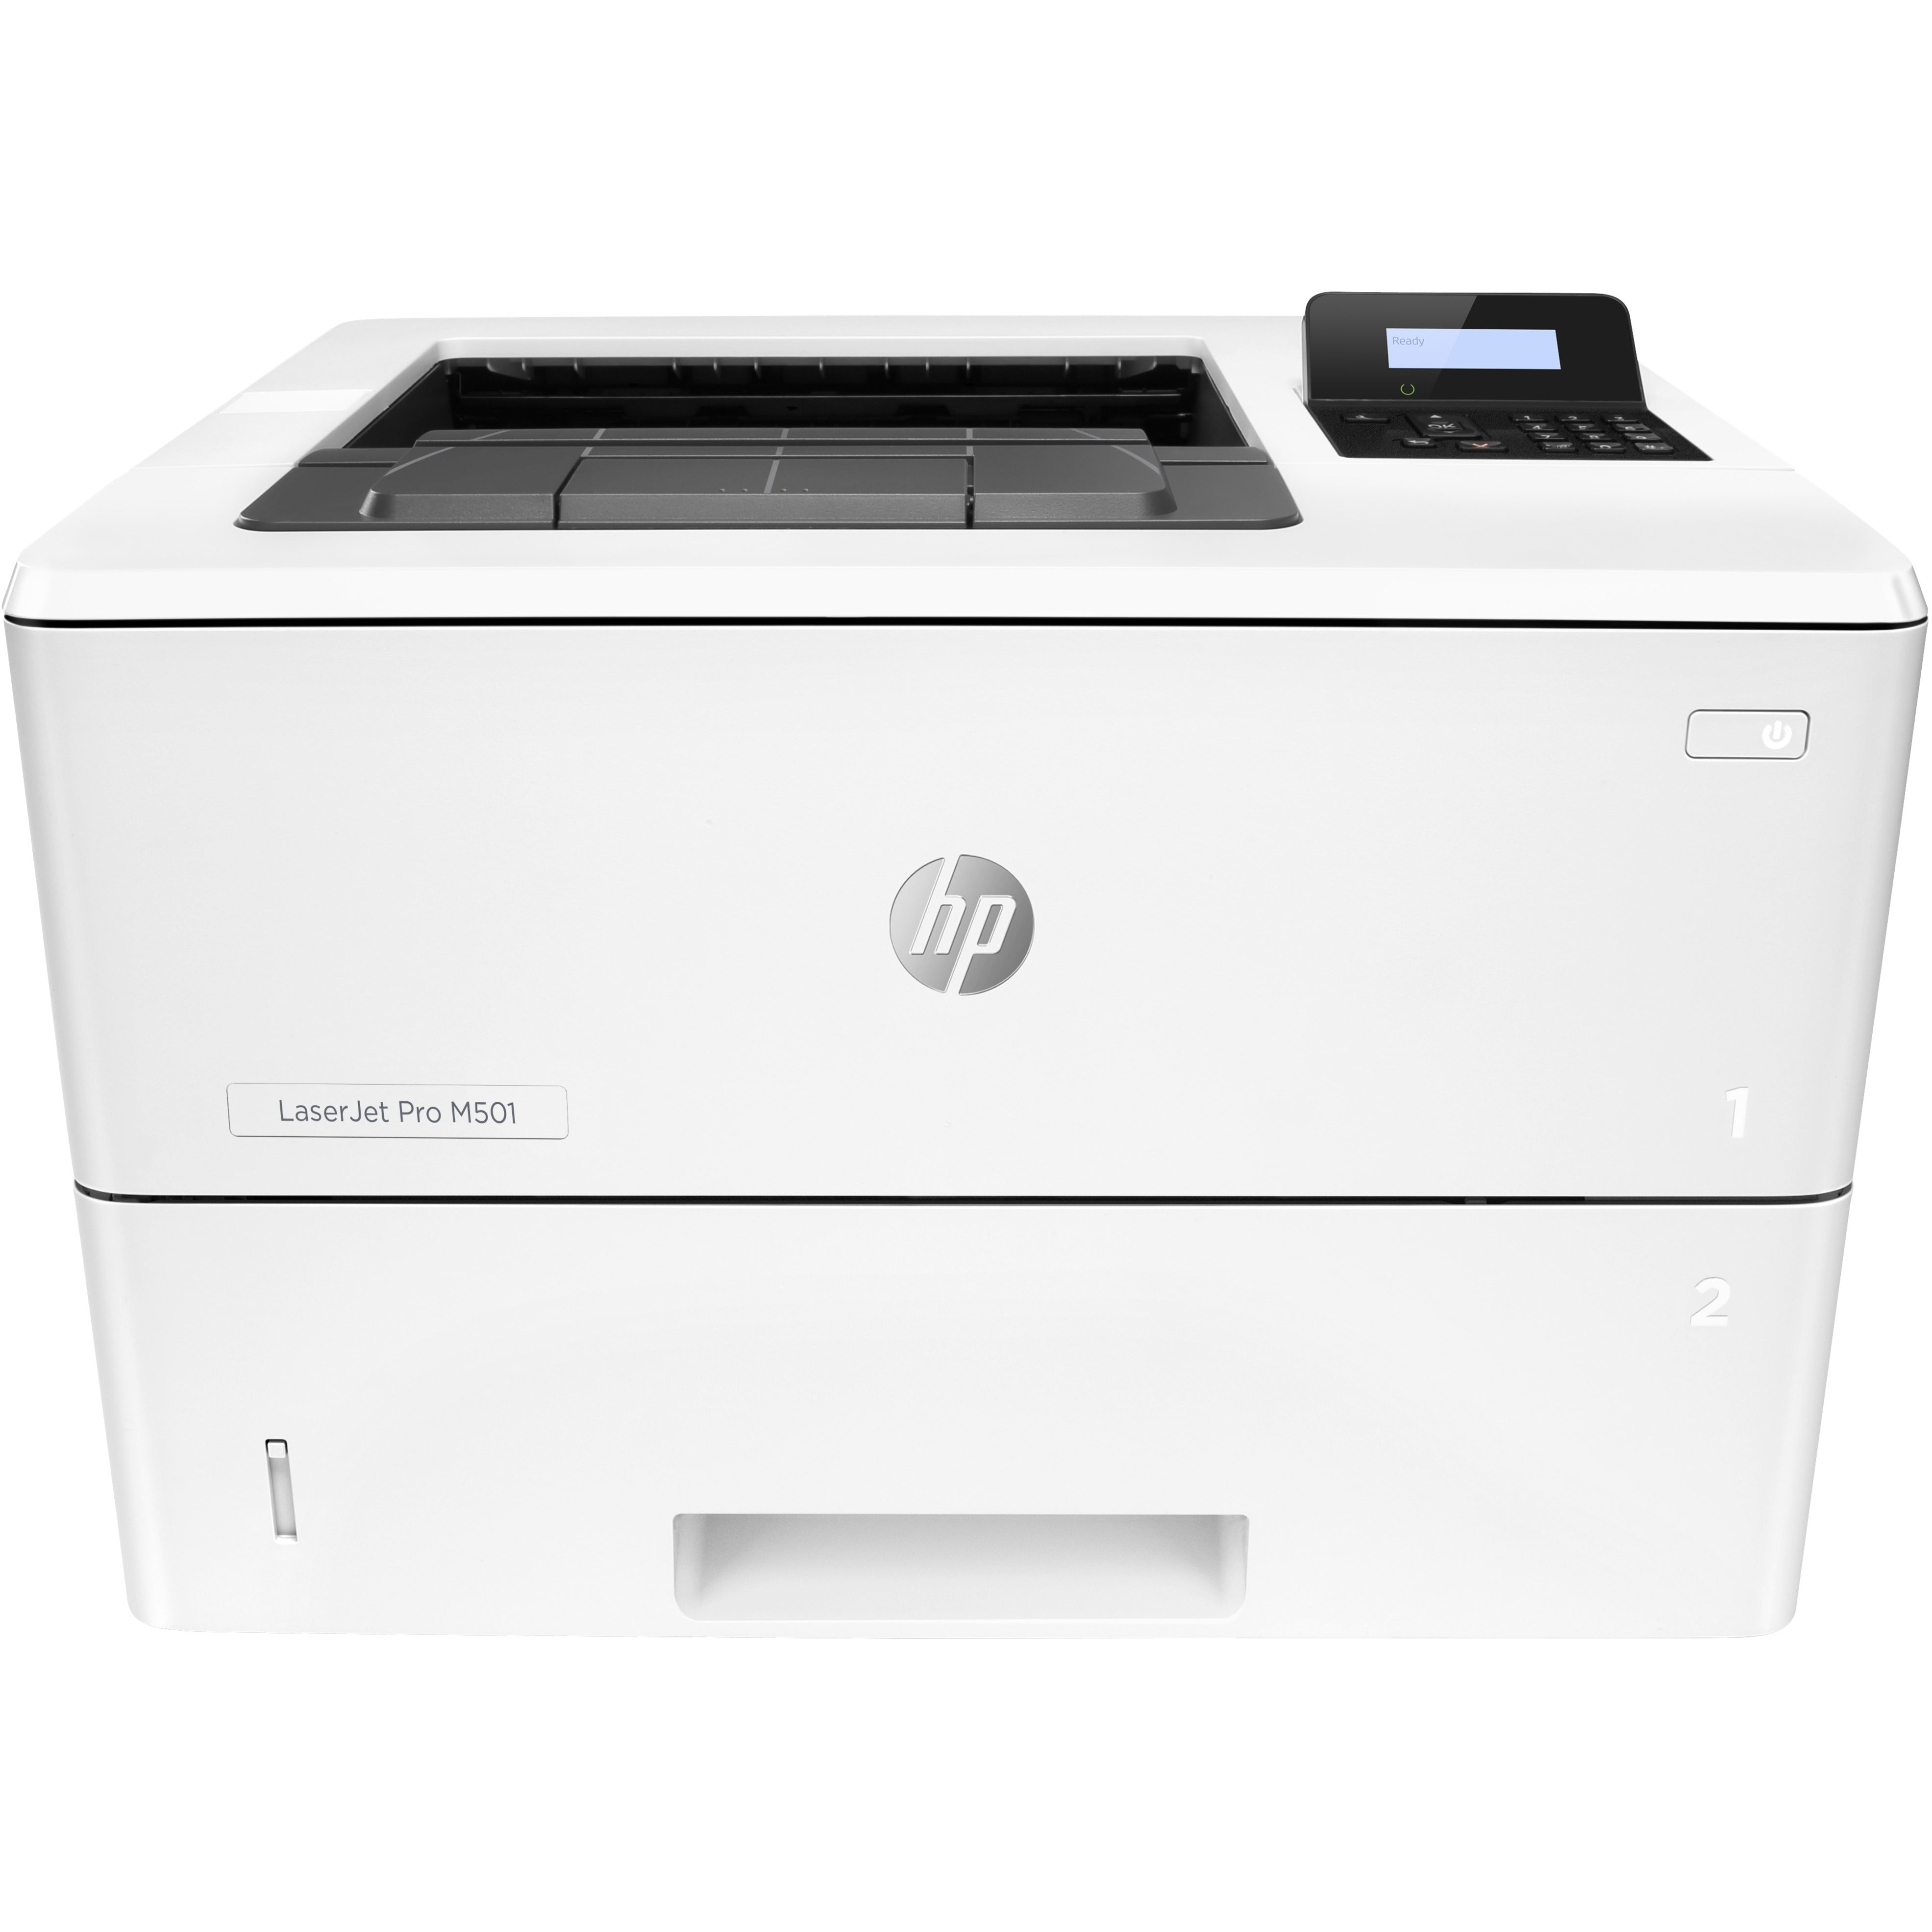 HP LaserJet Pro M501 M501dn Desktop Laser Printer - Monochrome (J8H61A#BGJ)